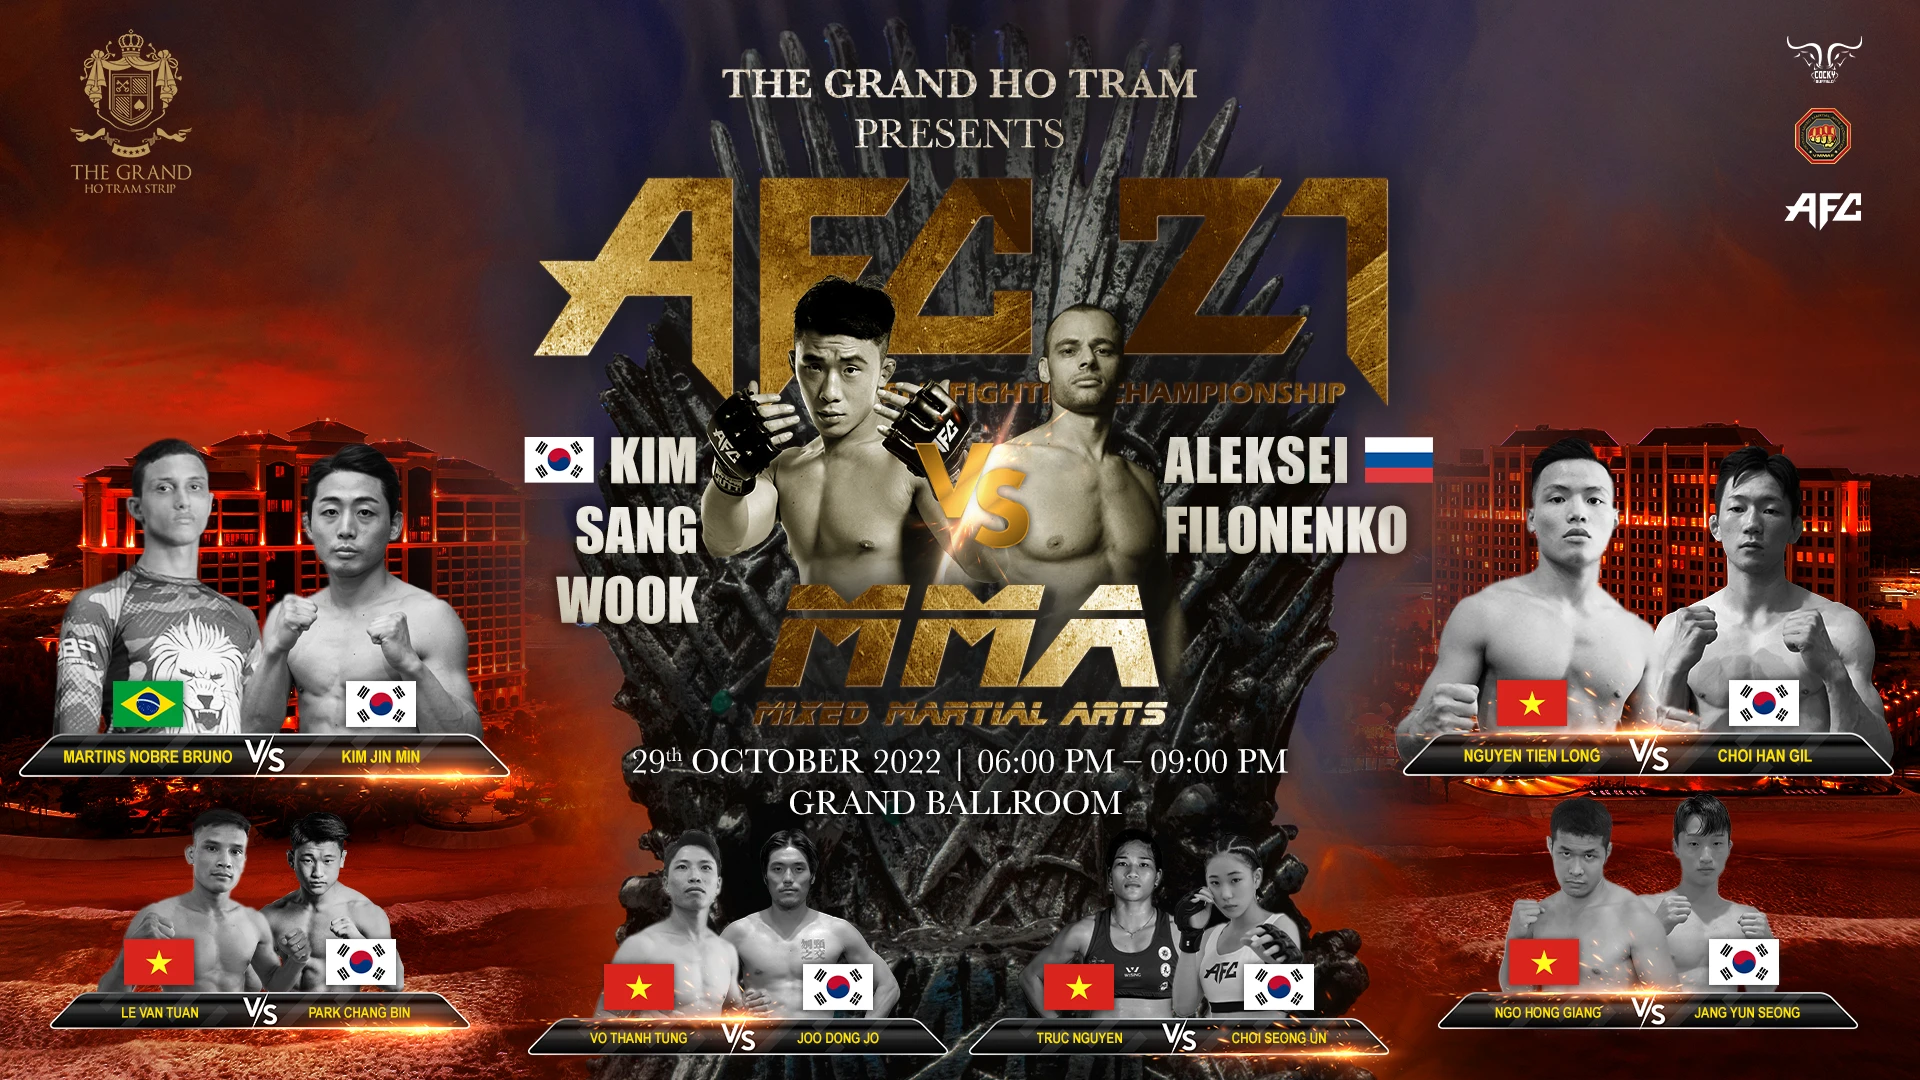 The Grand Ho Tram Strip trở thành Khu Phức Hợp đăng cai giải đấu MMA đầu tiên tại Hồ Tràm